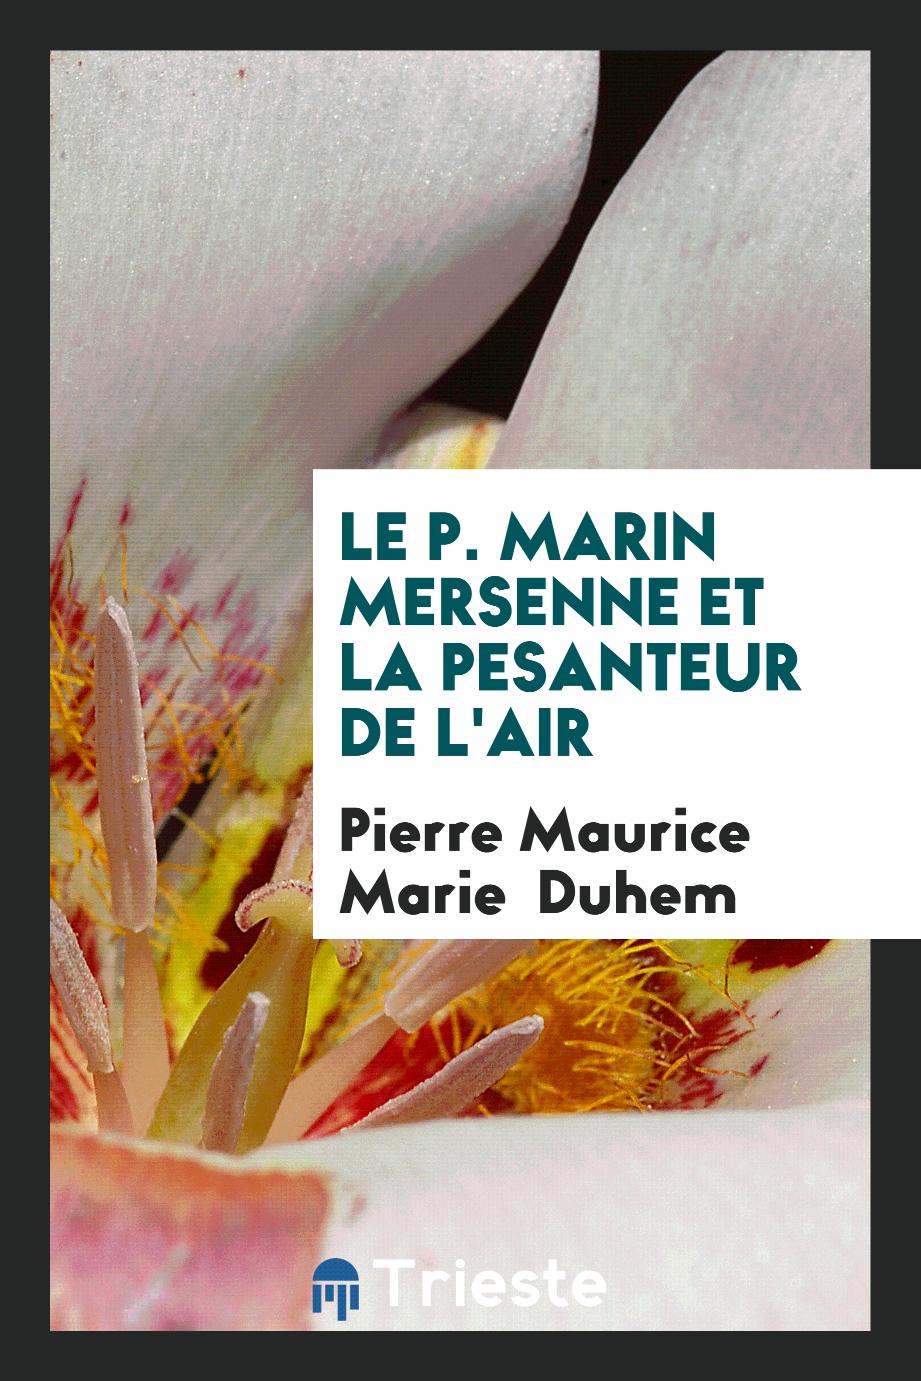 Le P. Marin Mersenne et la Pesanteur de l'Air